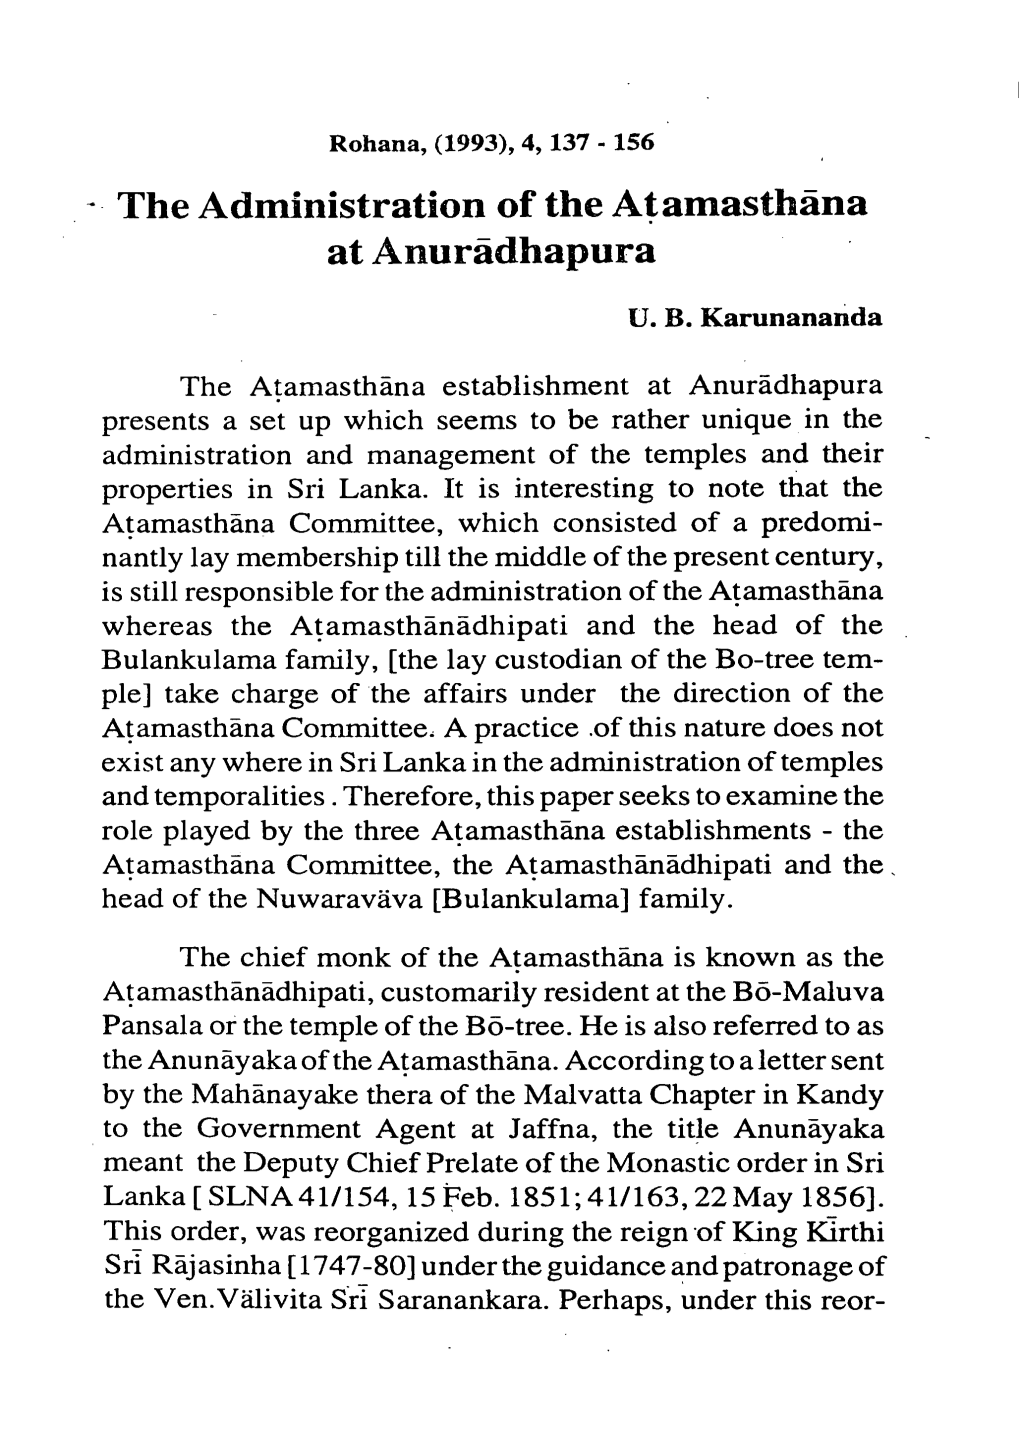 The Administration of the Atamasthana at Anuradhapura